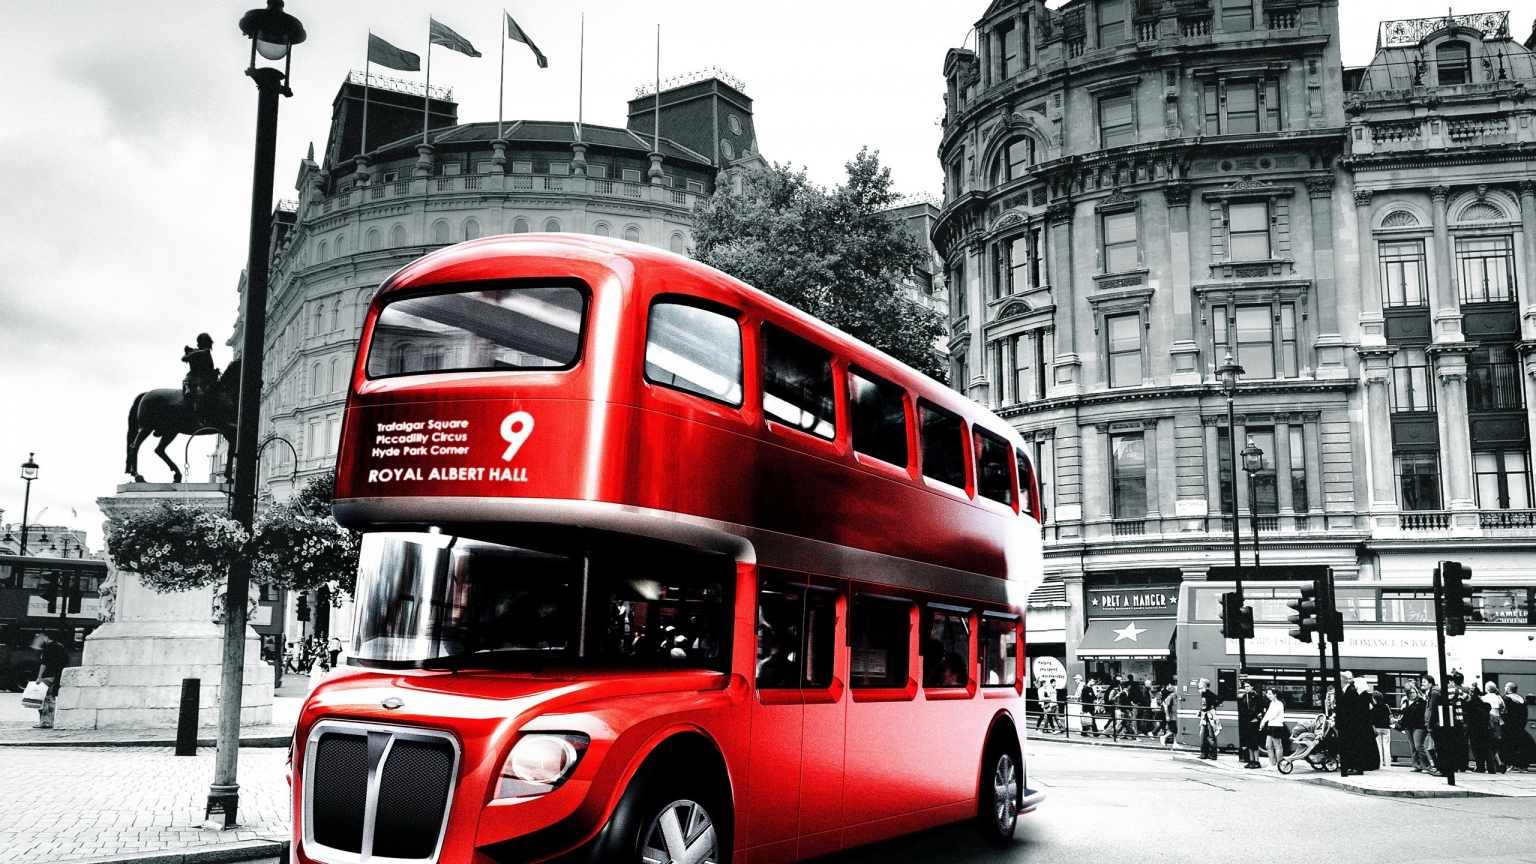 London Bus Design for 1536 x 864 HDTV resolution